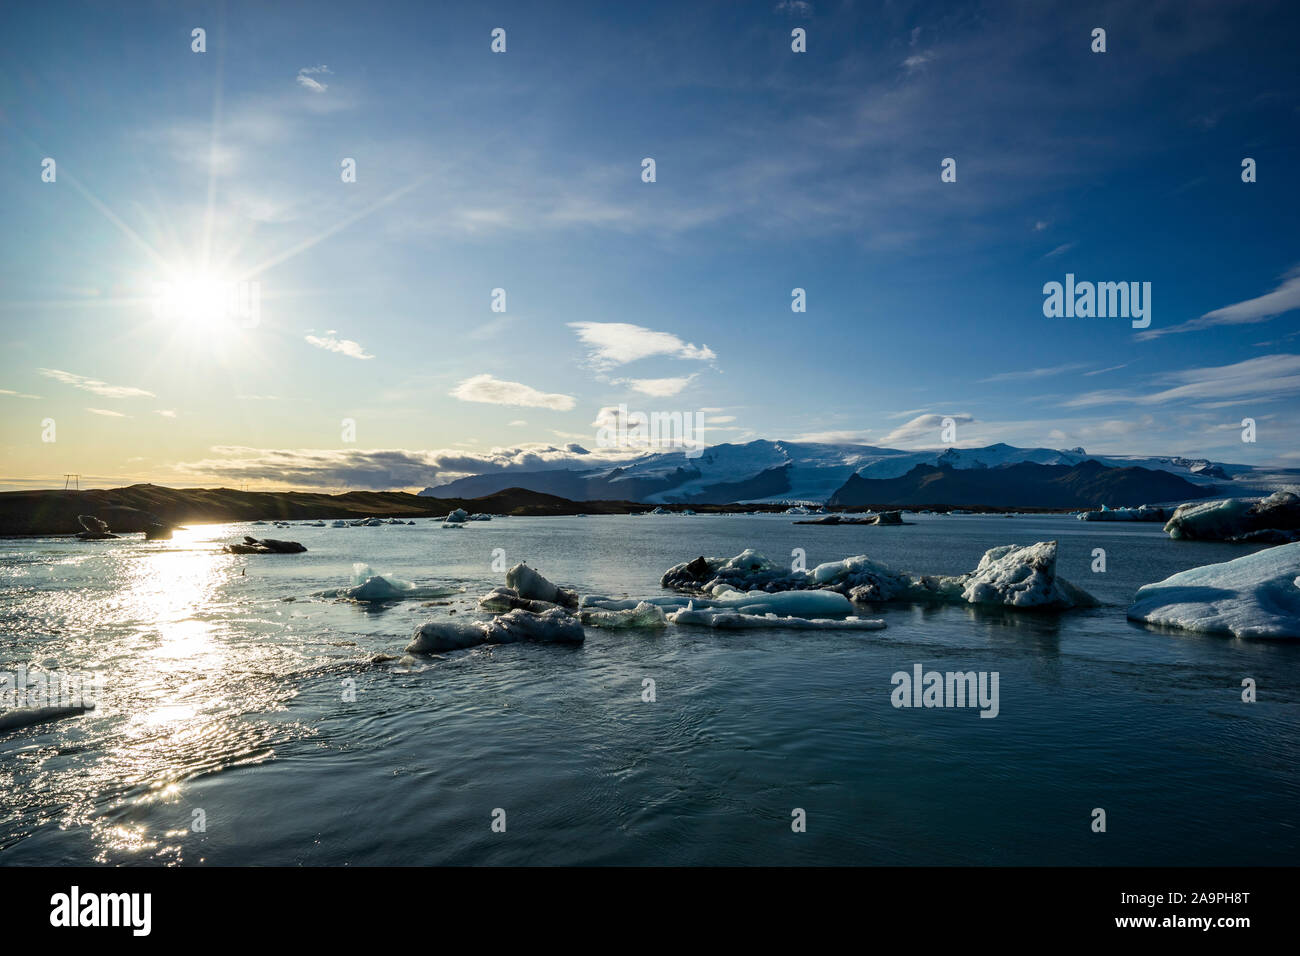 Impressionante paesaggio di ghiaccio del ghiacciaio Jökulsárlón laguna in Islanda Foto Stock